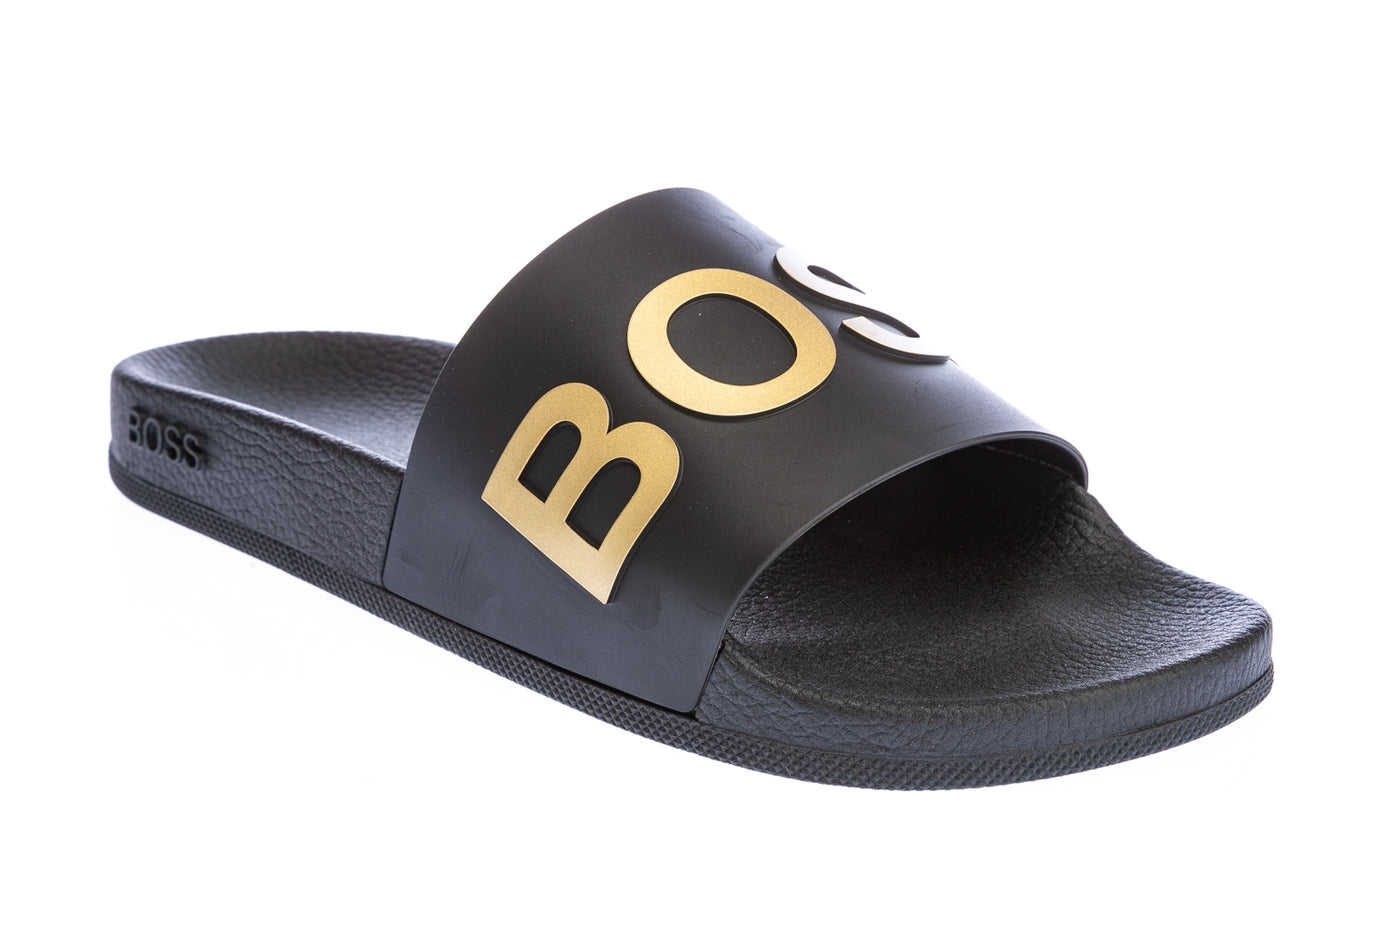 BOSS Bay_Slid Slide in Black & Gold